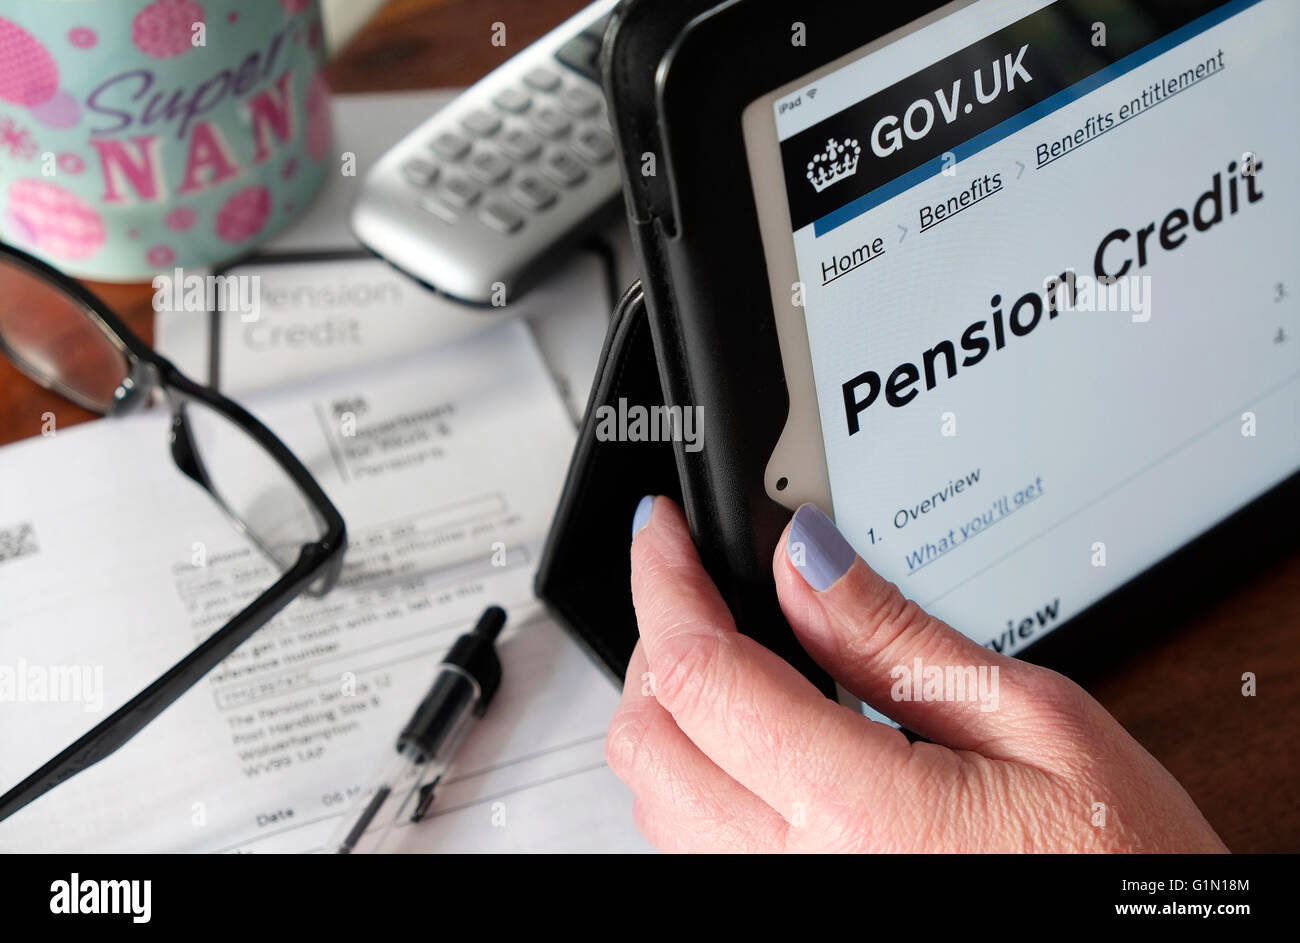 gov.uk staatliche Rentenkredit Homepage auf Computer-Tablet-Bildschirm Stockfoto